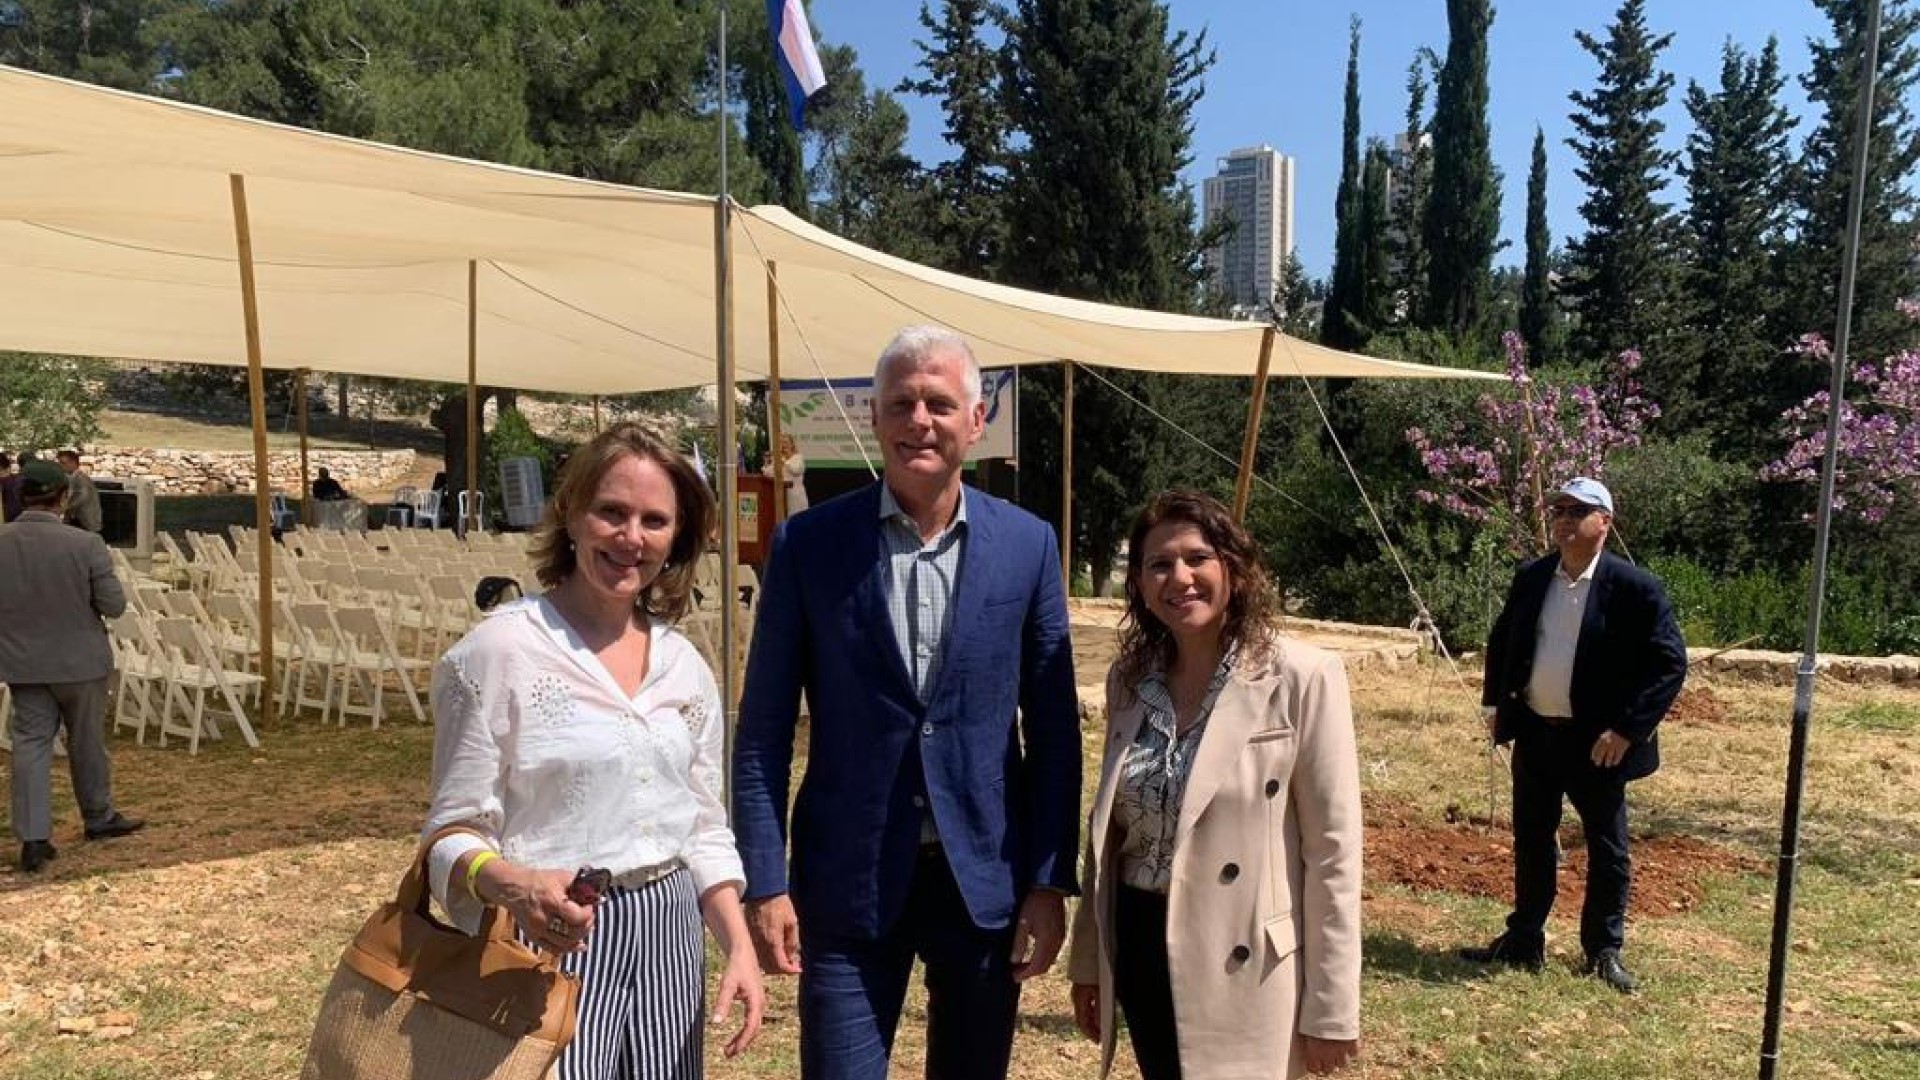 75 diplomaten planten 75 bomen - Vivian met de ambassadeur en voorzitter van JNF Israël